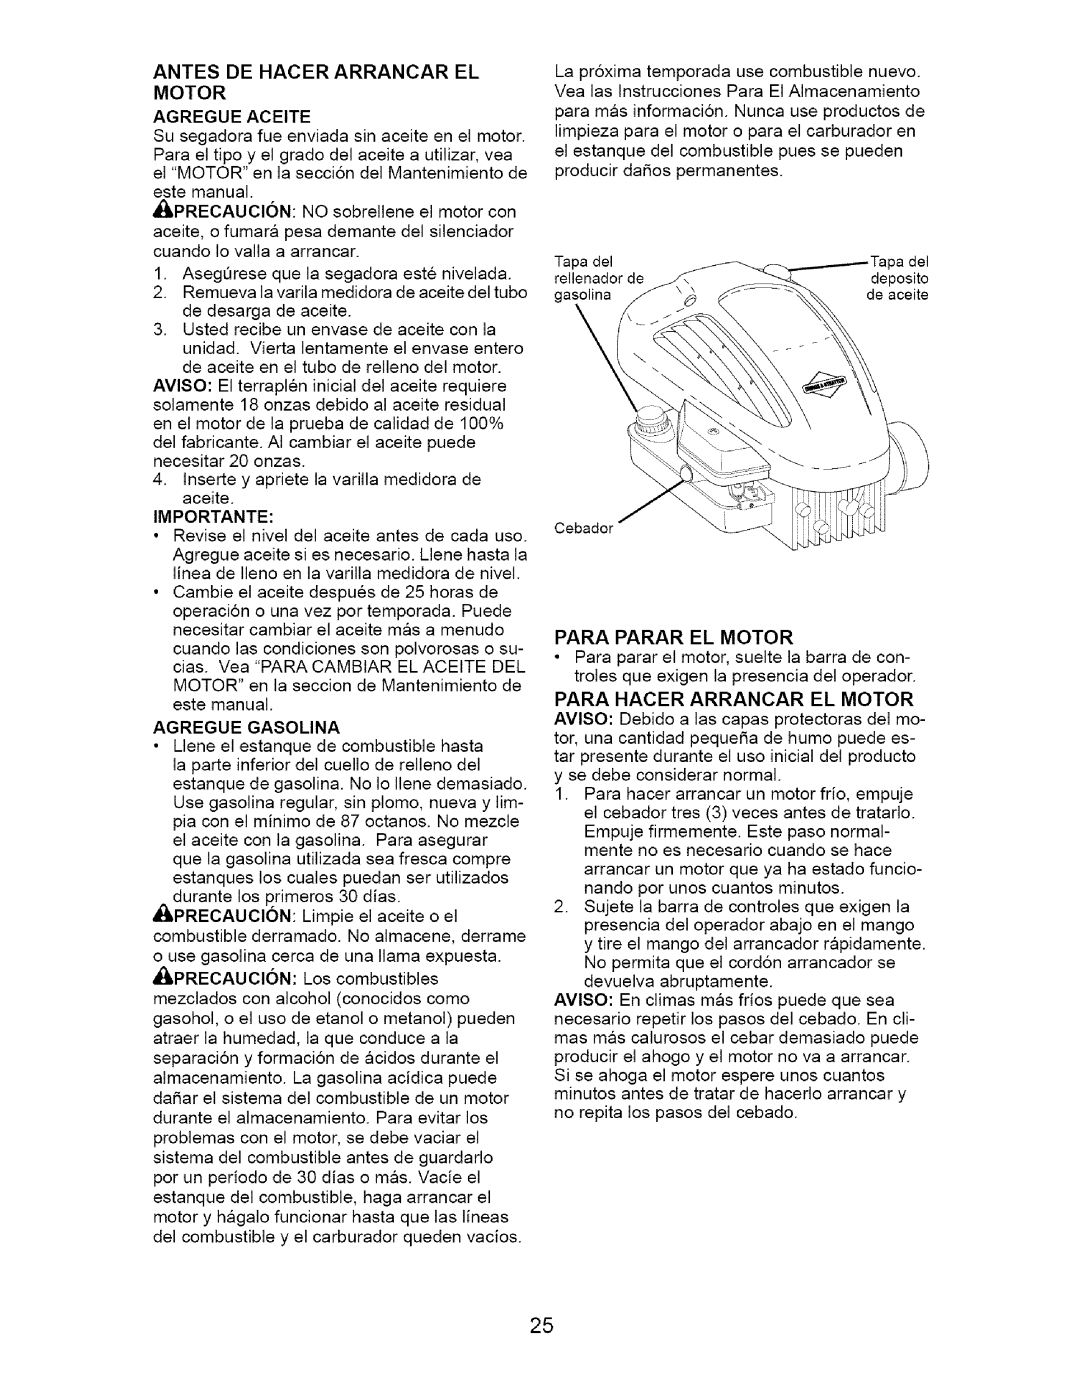 Craftsman 917.38514 owner manual Motor Agregue Aceite, Para Parar El Motor 